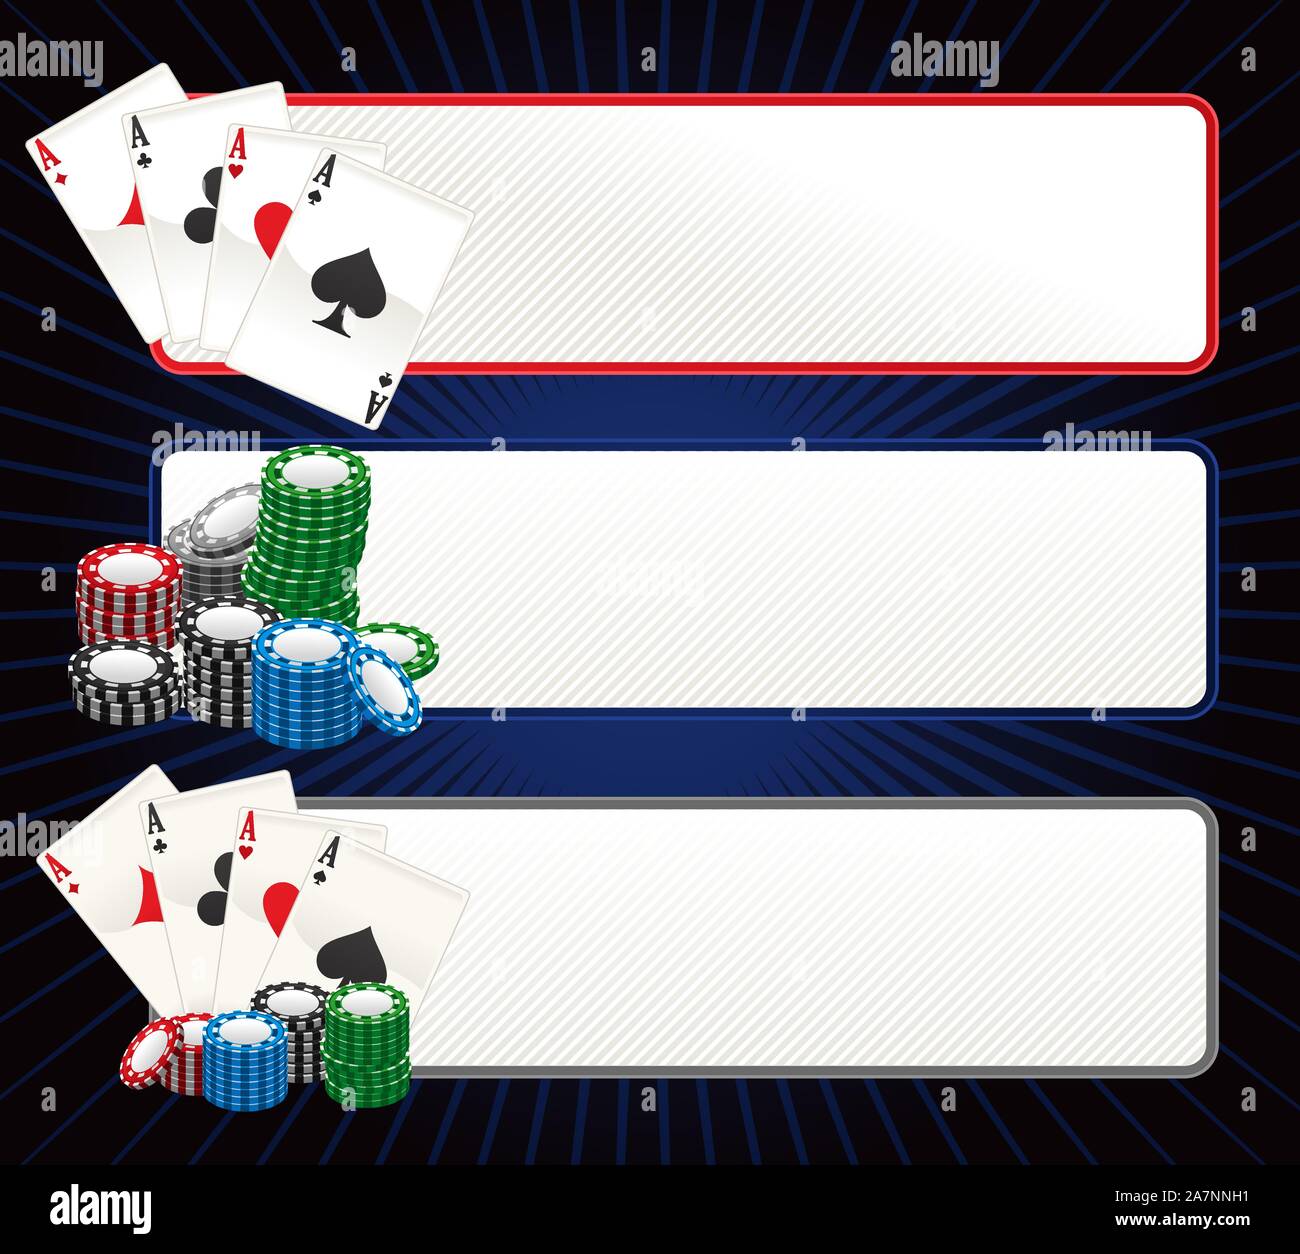 Poker banner set vector illustration Stock Vector Image & Art - Alamy